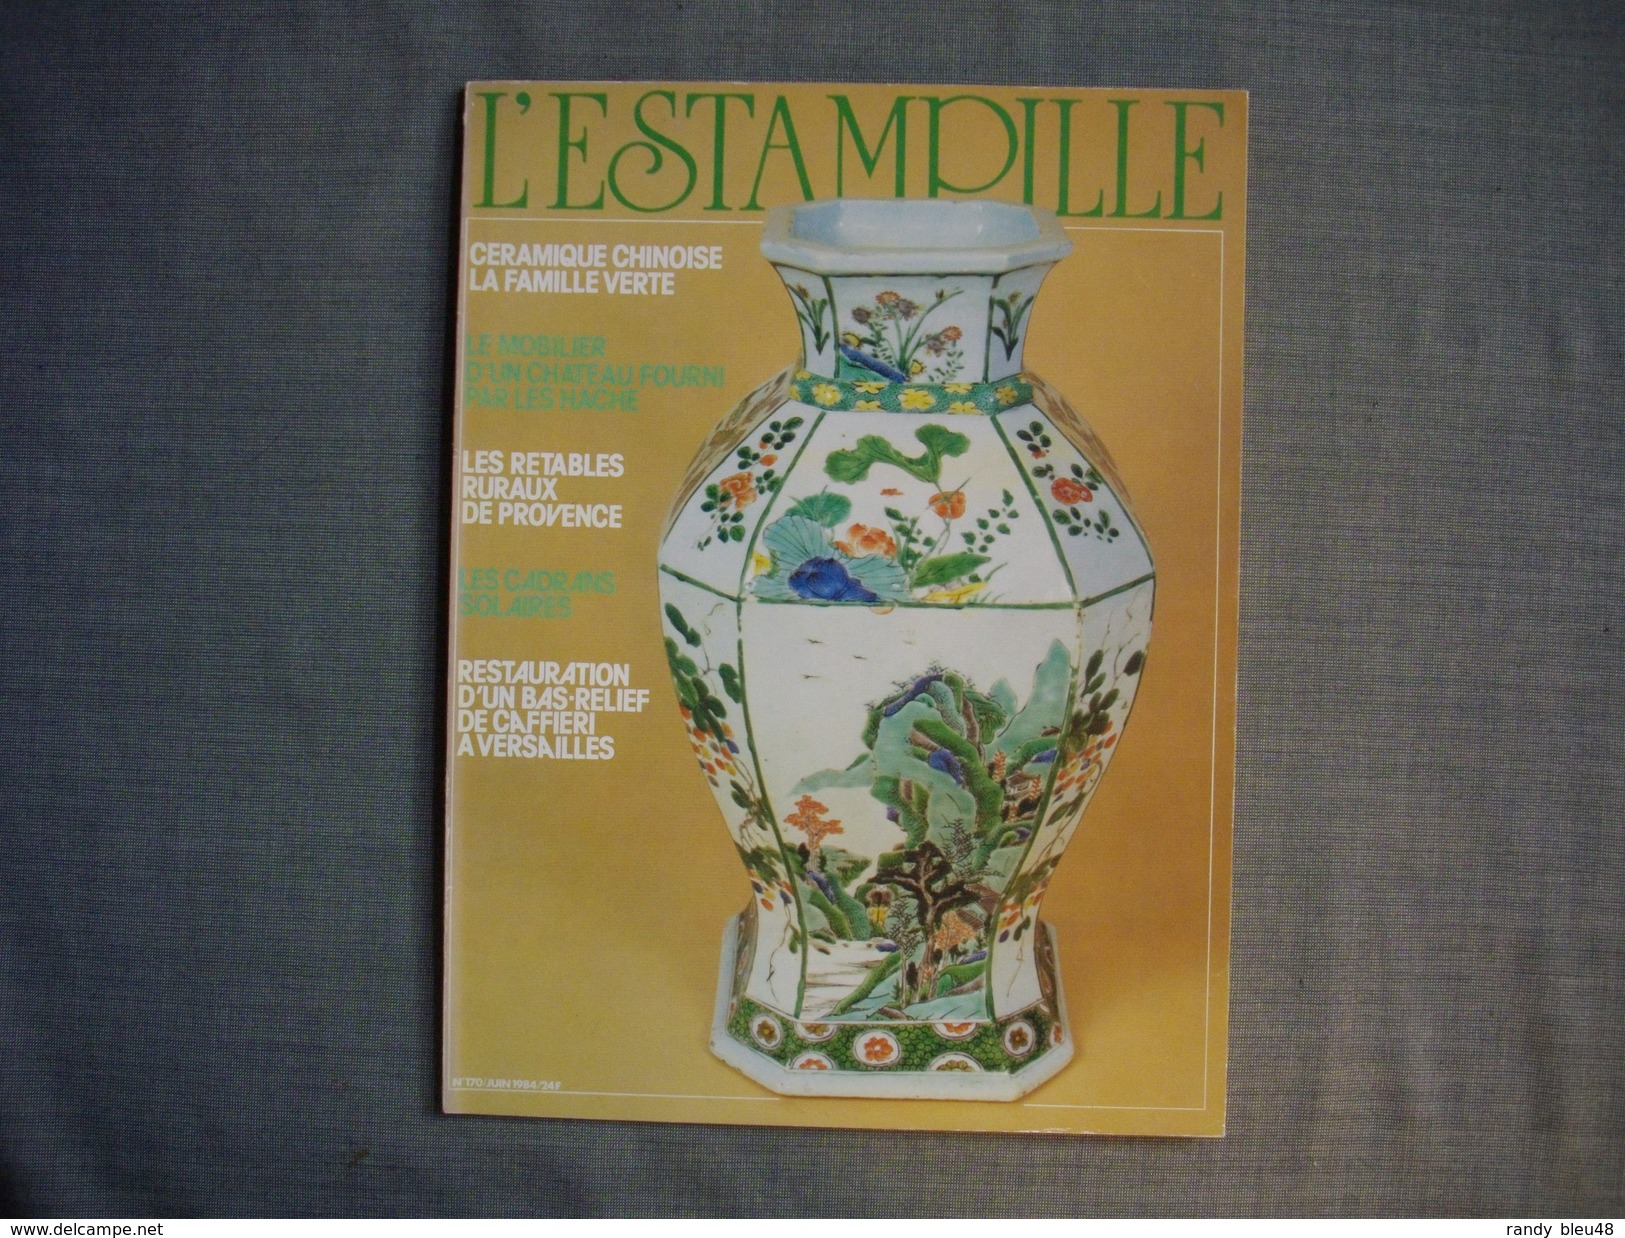 L'ESTAMPILLE  ( L'objet D'Art )  N° 170  - 1984 -  Céramique Chinoise  -  Les HACHE  -  Les Retables De Provence - Brocantes & Collections